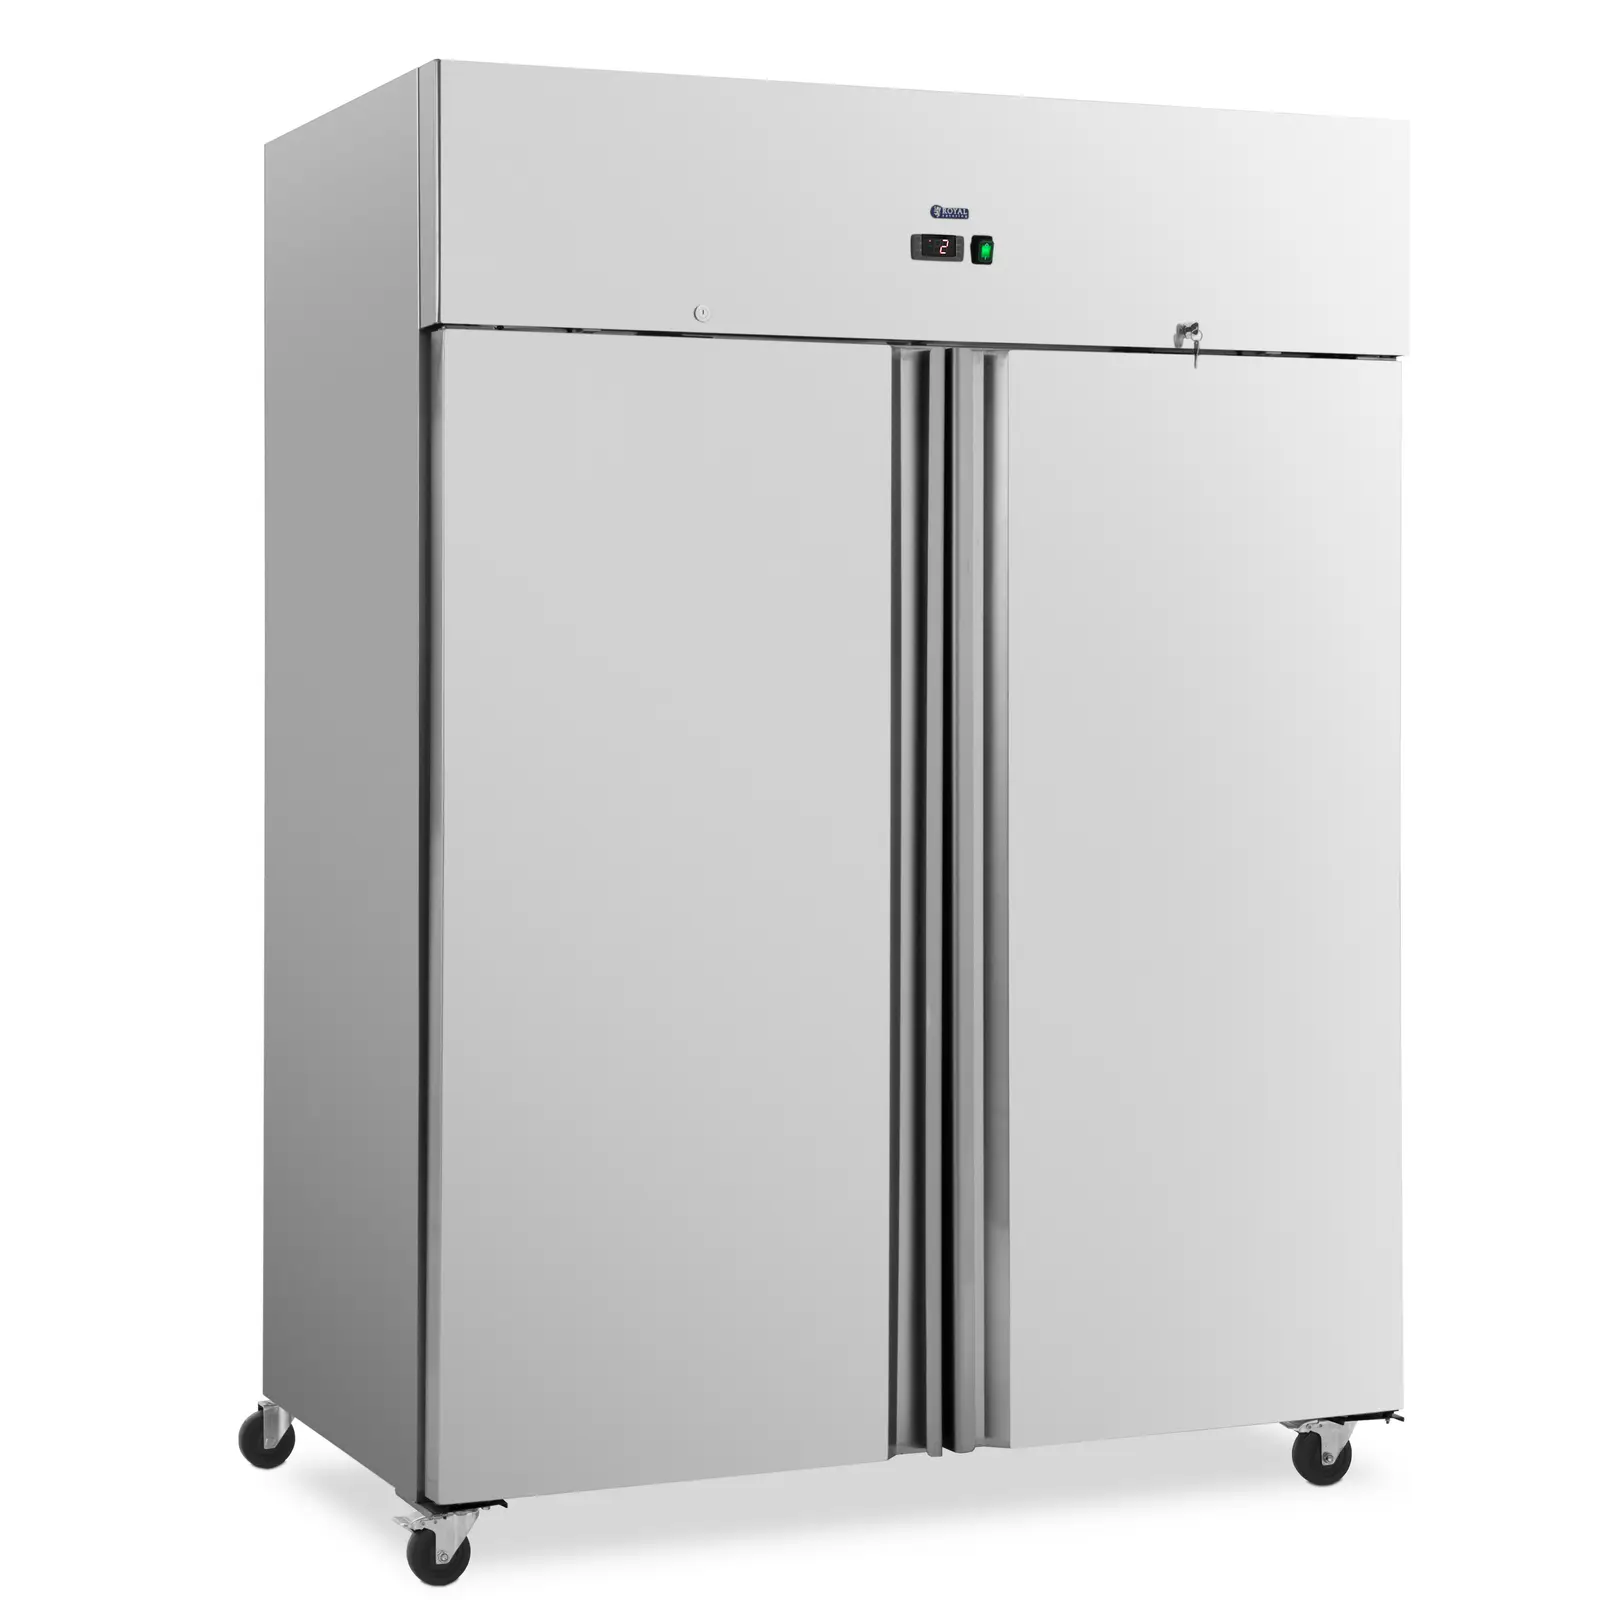 Refrigerador para gastronomía - 1001 L - acero inoxidable - 2 puertas - 4 ruedas - con cerradura - Royal Catering